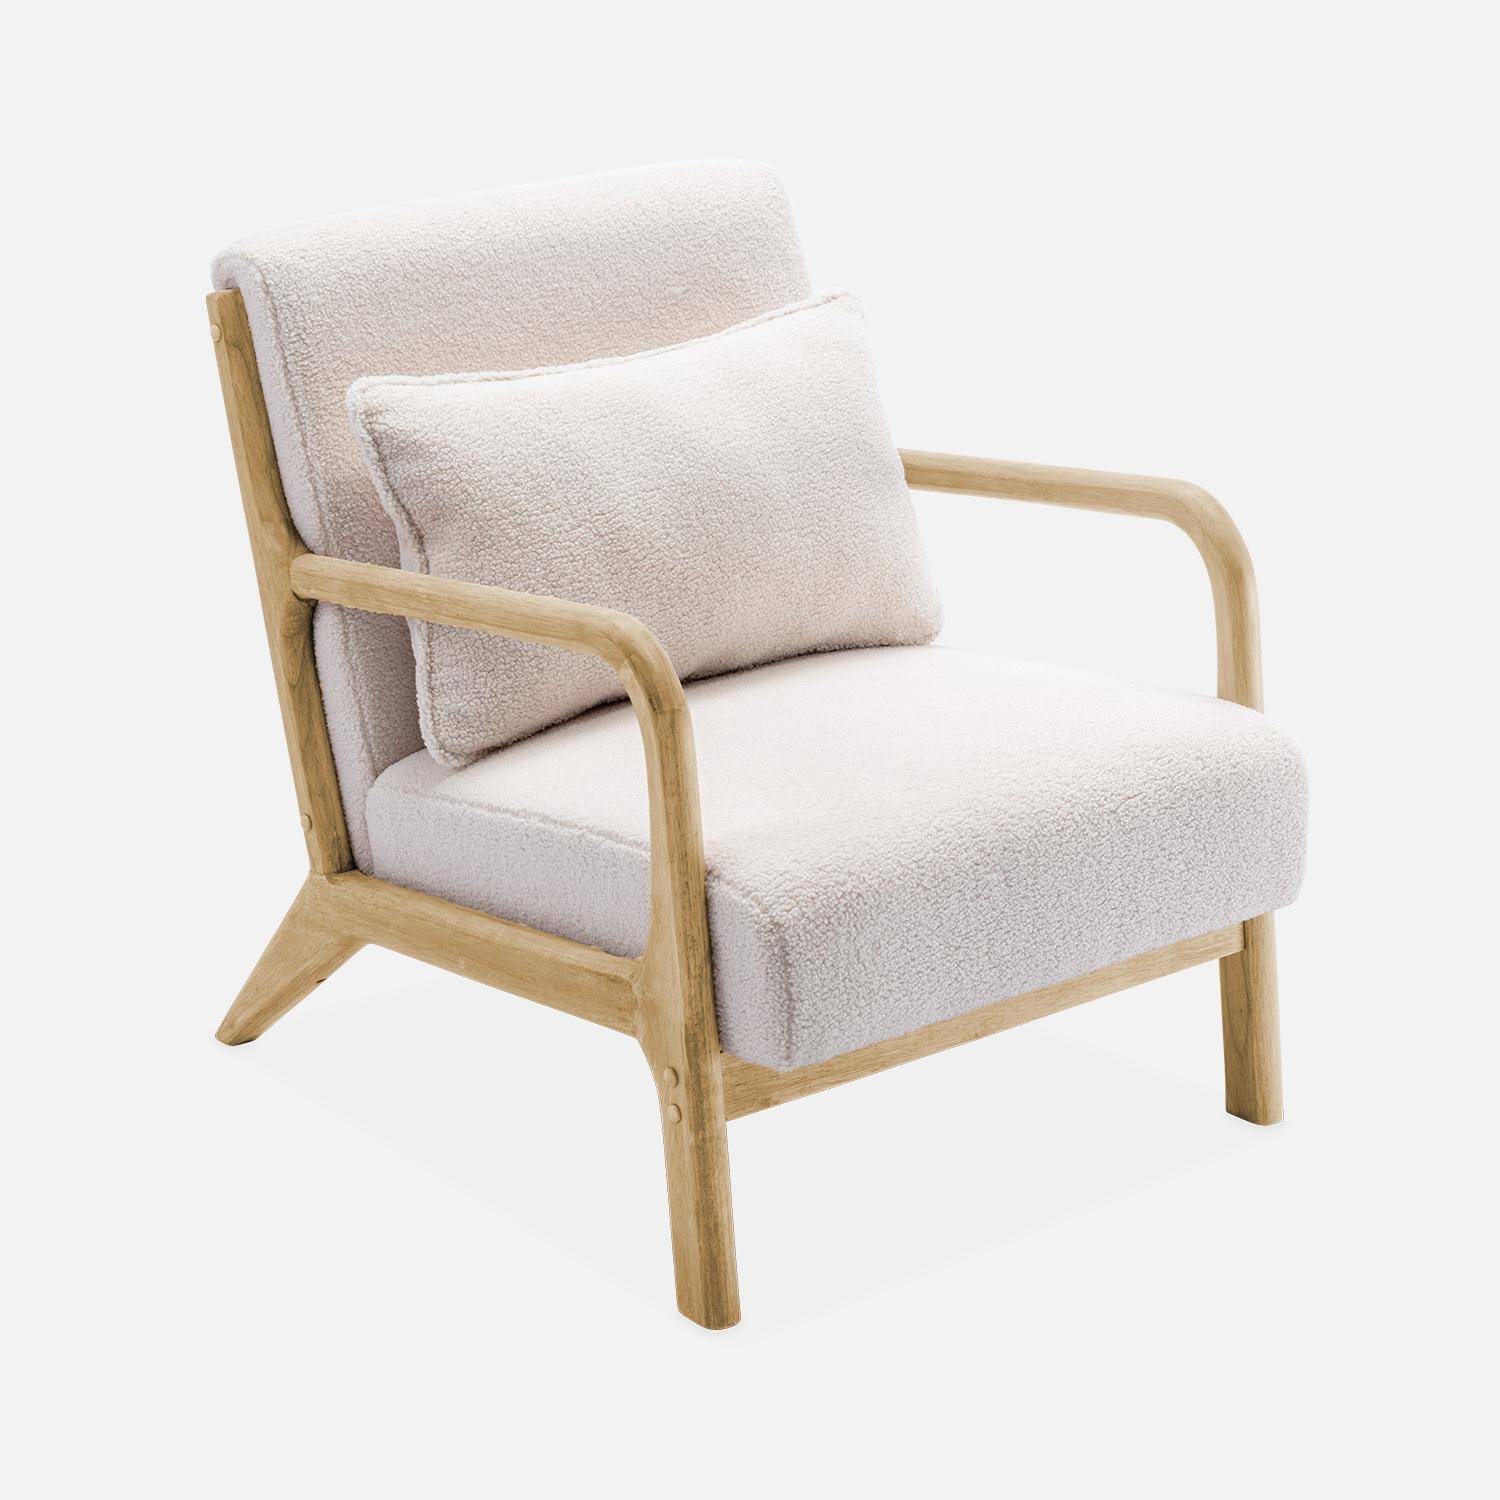 Sillón de rizos blancos, madera y tela, 1 asiento recto fijo, patas de compás escandinavas, armazón de madera maciza, asiento cómodo Photo4